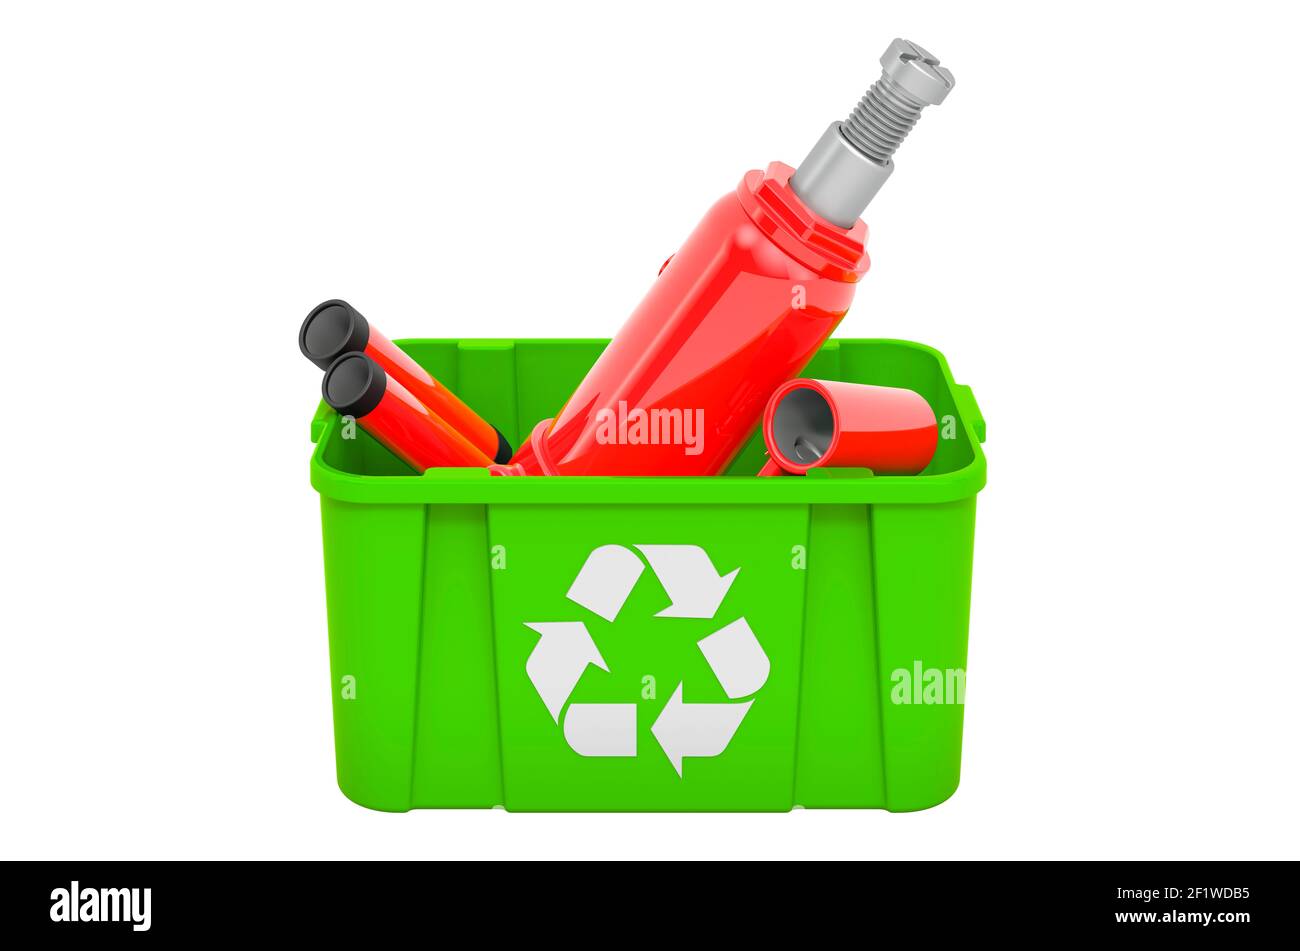 Poubelle de recyclage avec cric-bouteille hydraulique, rendu 3D isolé sur fond blanc Banque D'Images